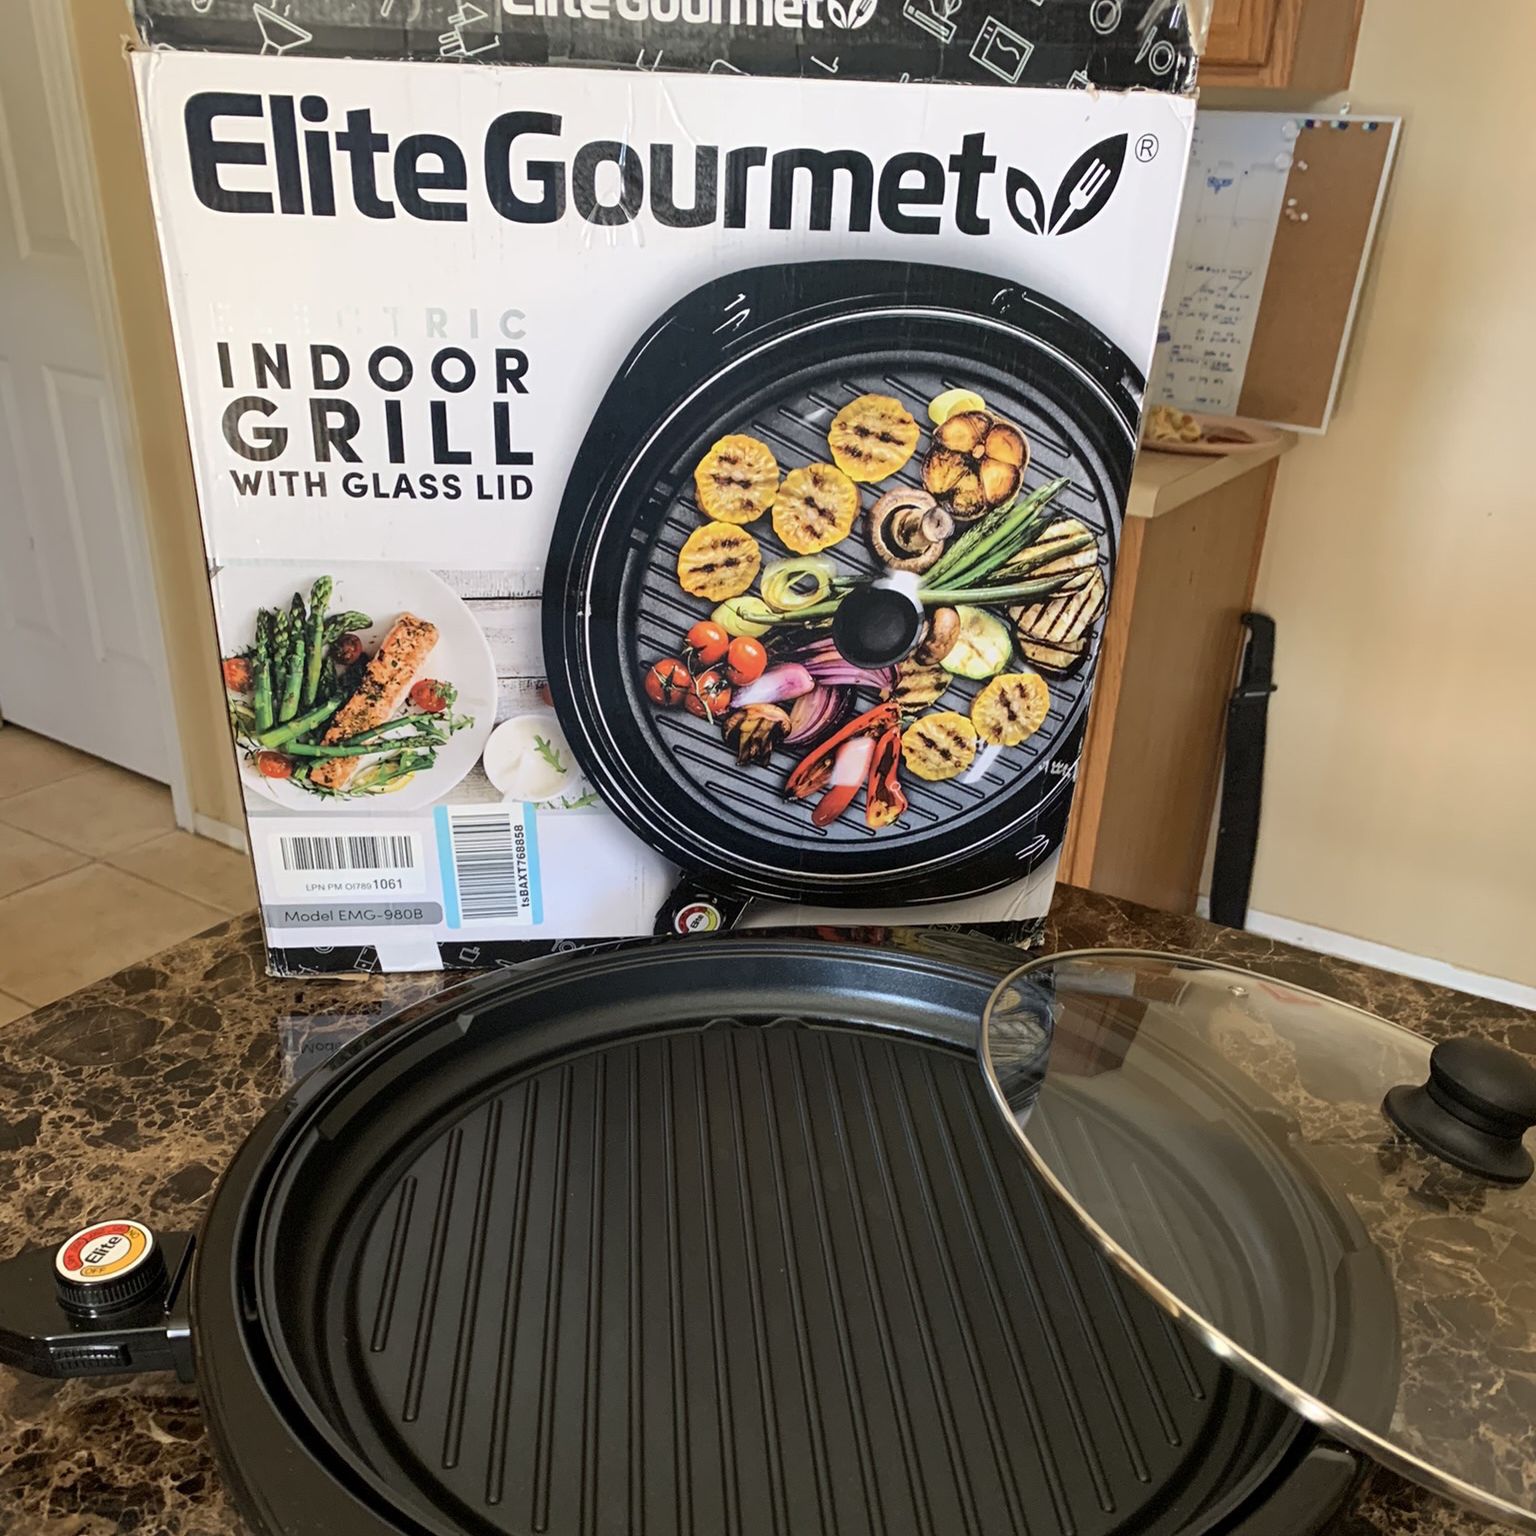 Elite Gourmet Indoor Electric Grill 